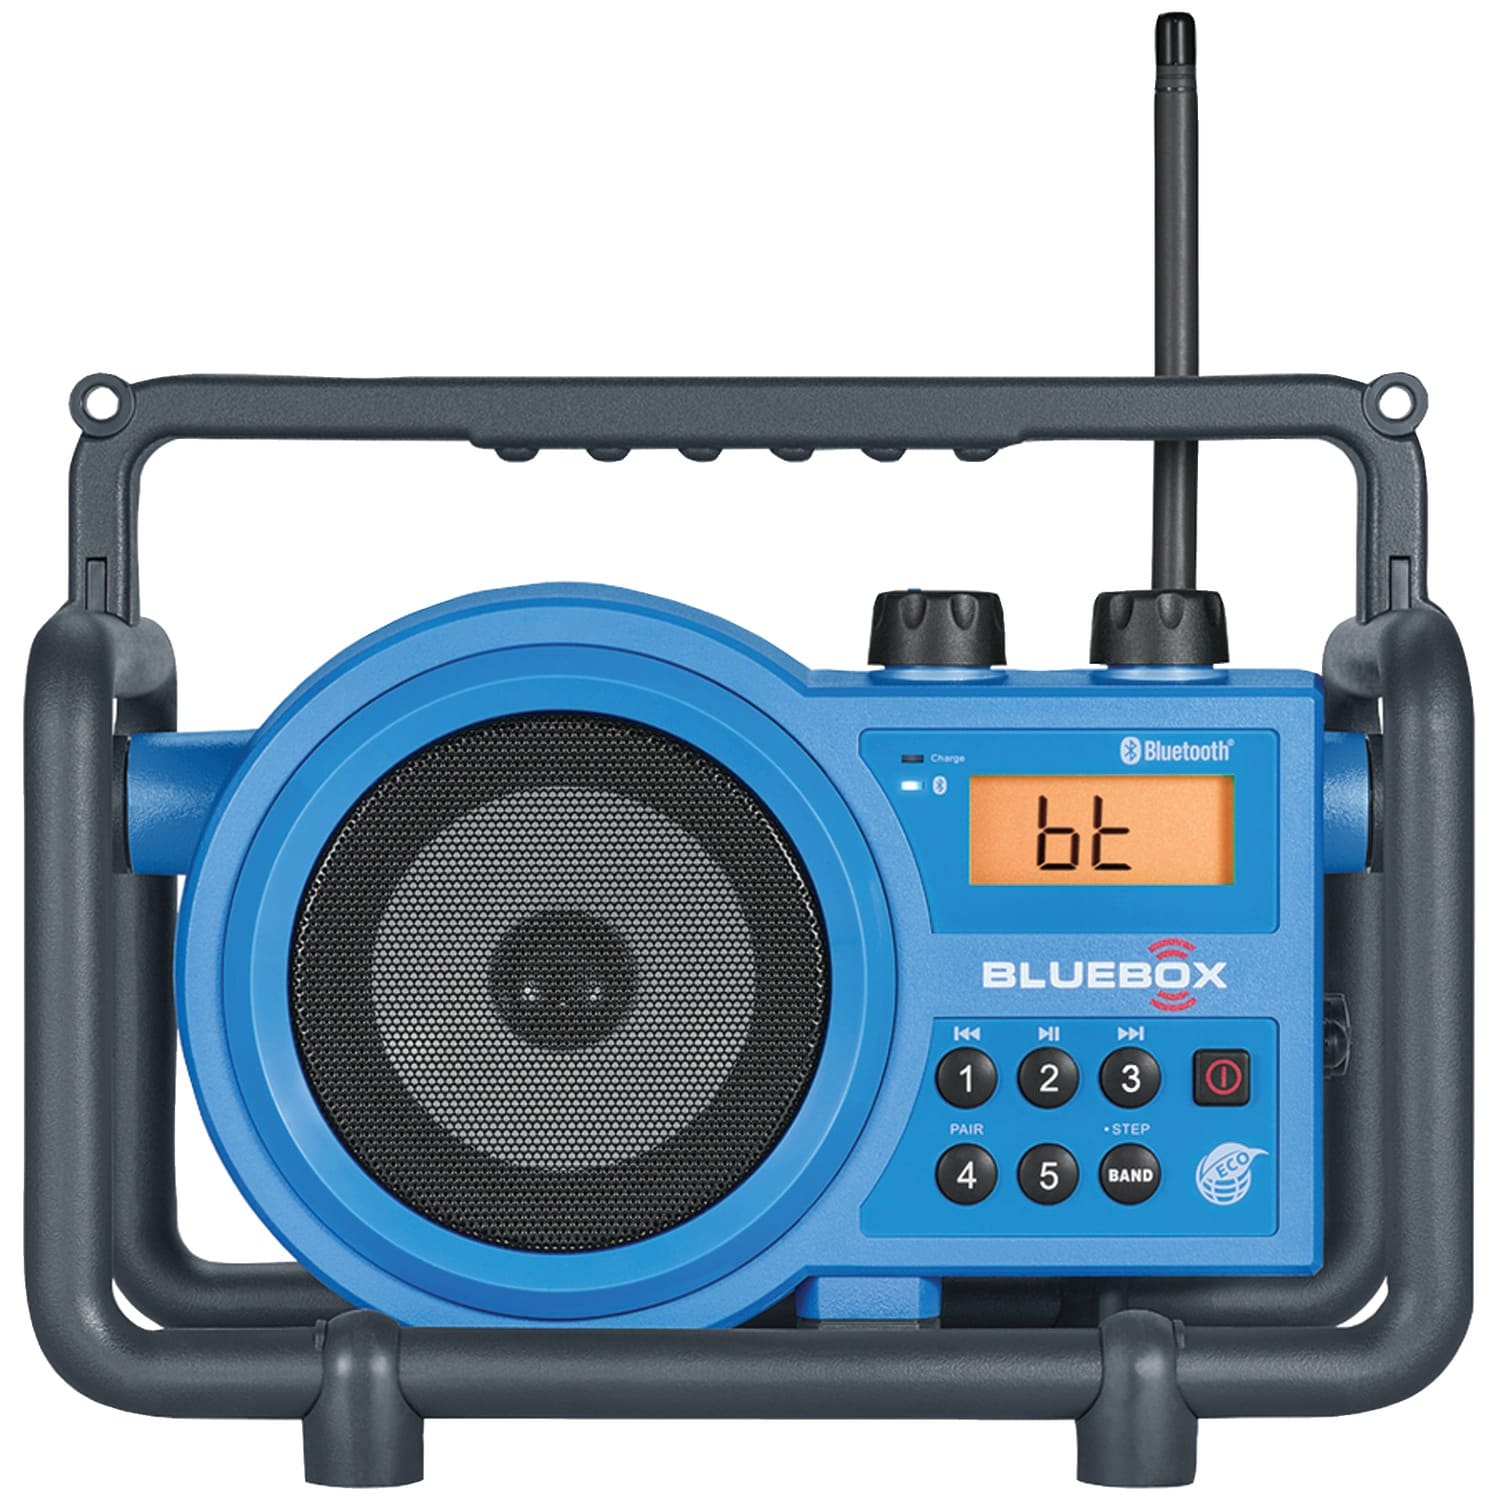 Sangean BlueBox AM/FM Ultra-Rugged Digital Receiver with Bluetooth 